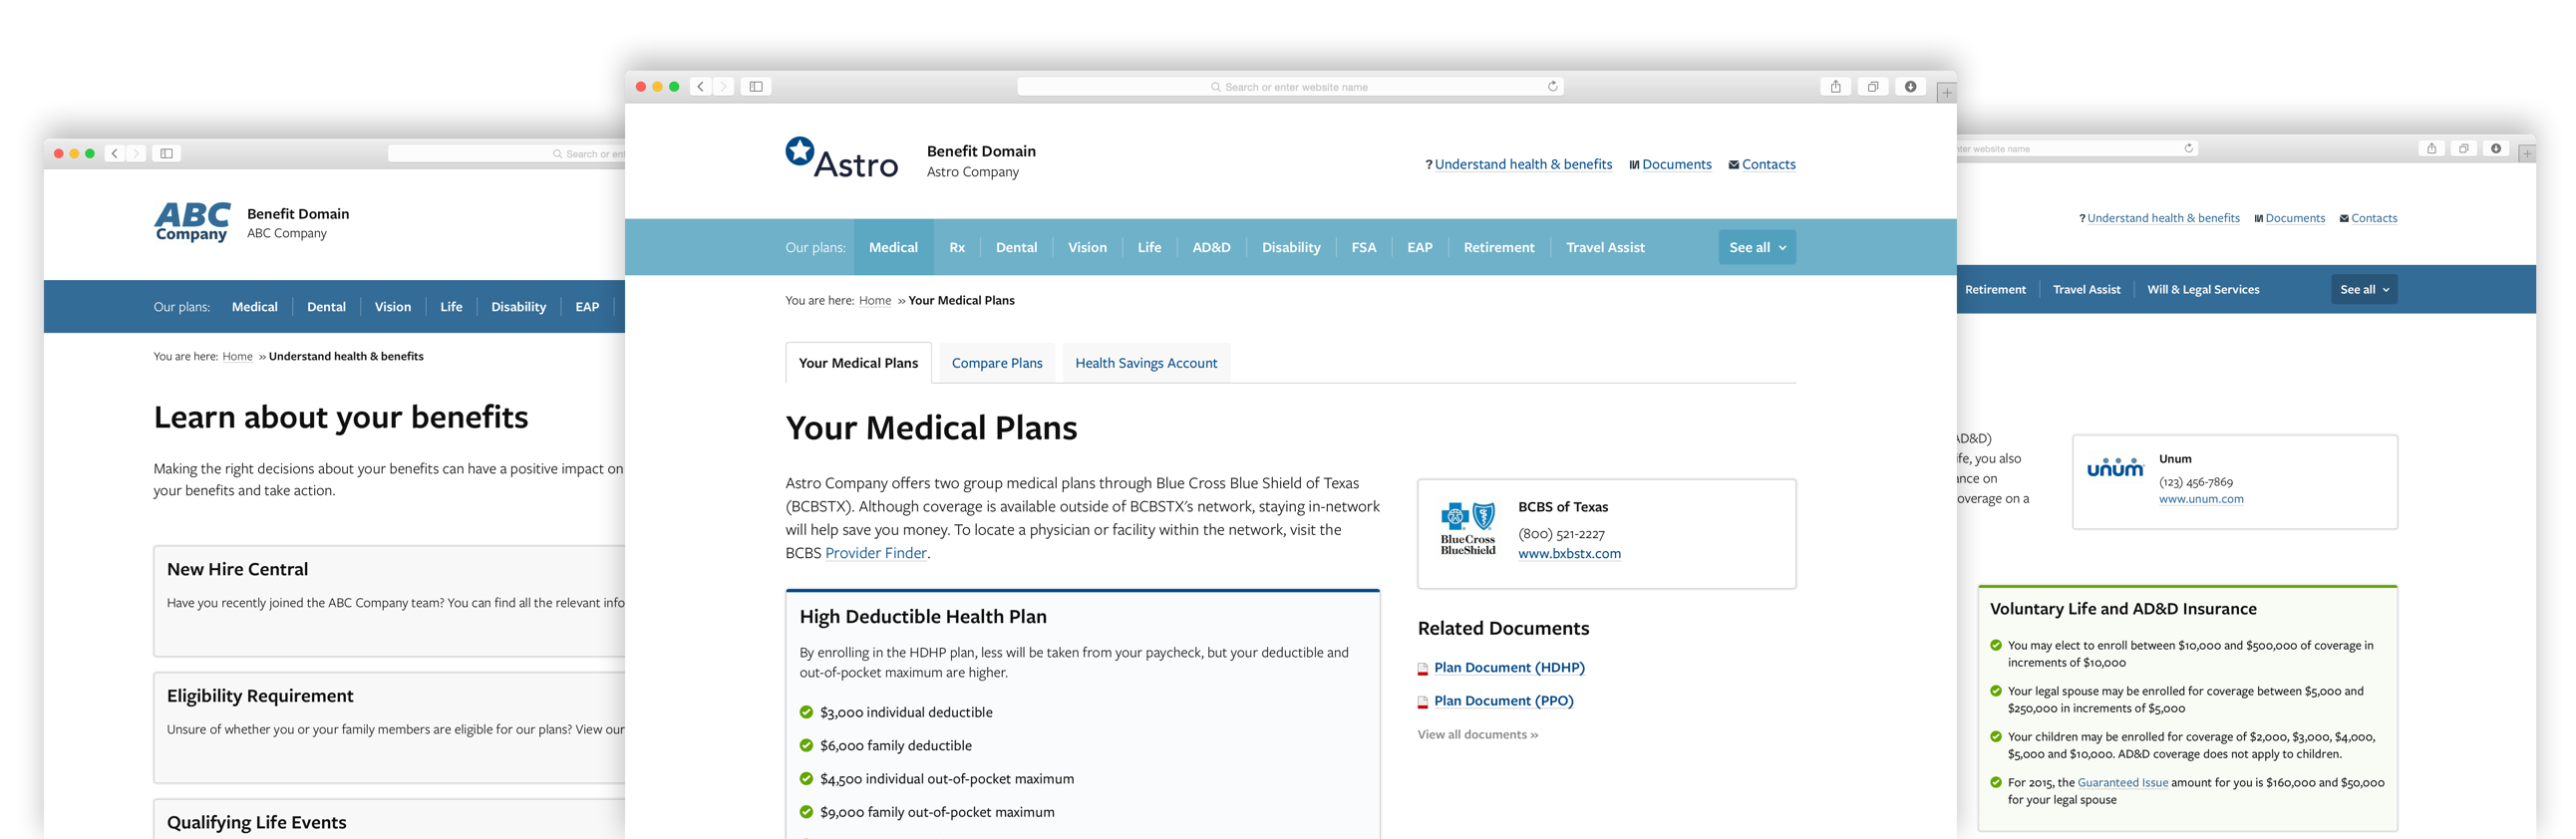 Screenshots of Benefit Domain websites.